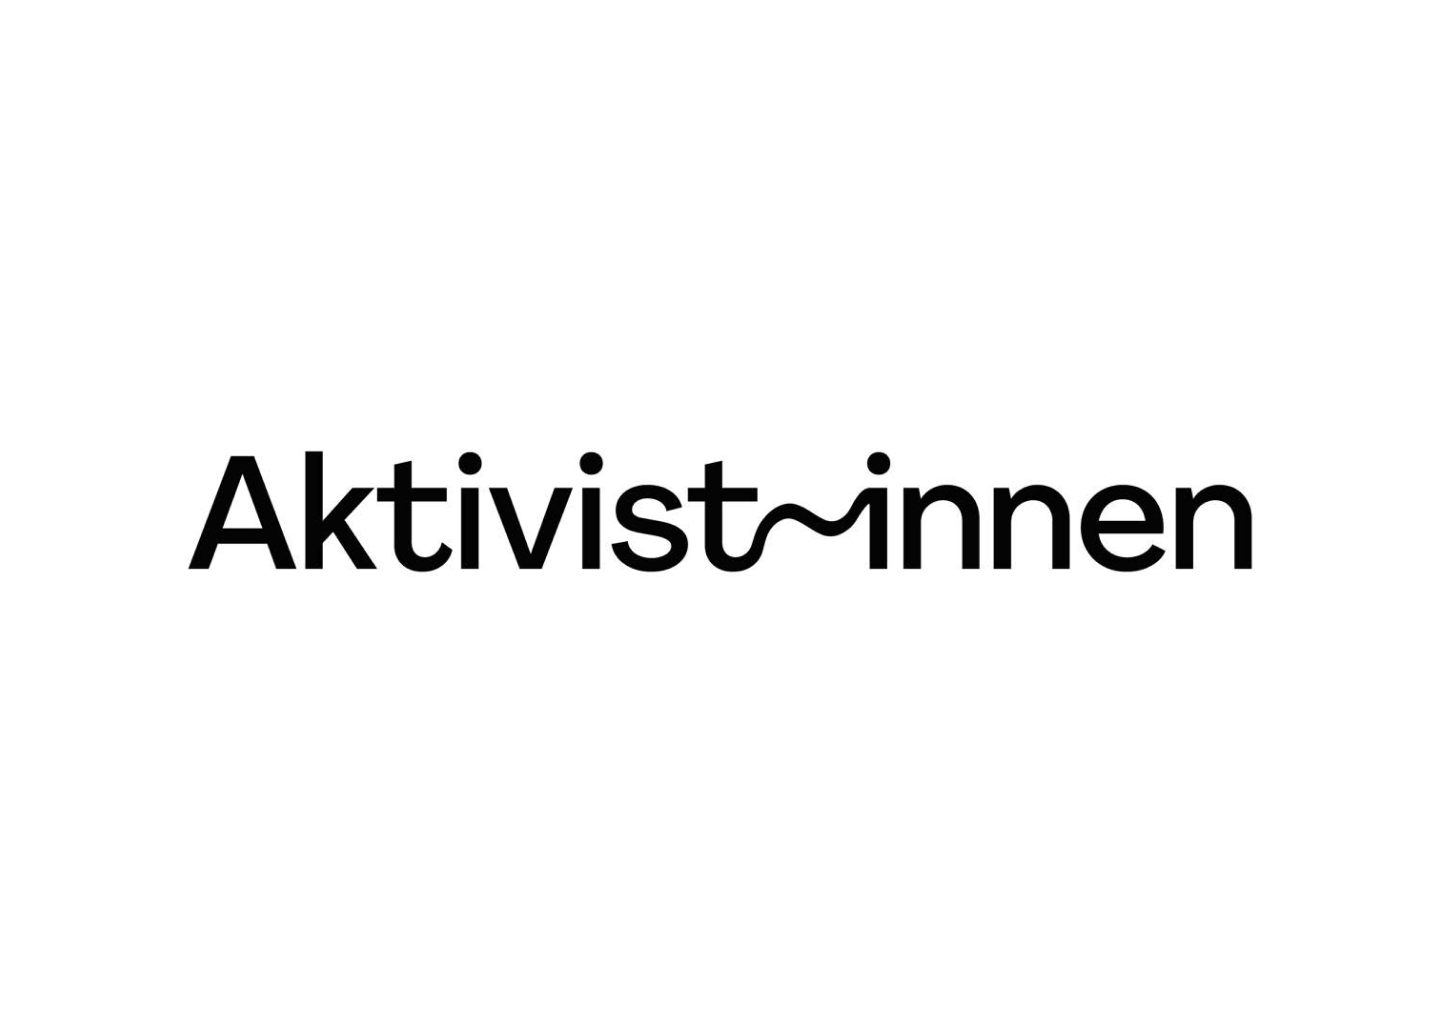 Das Wort "Aktivist:innen" bei dem "Aktivist" und "innen" durch einen gewellten Strich verbunden sind